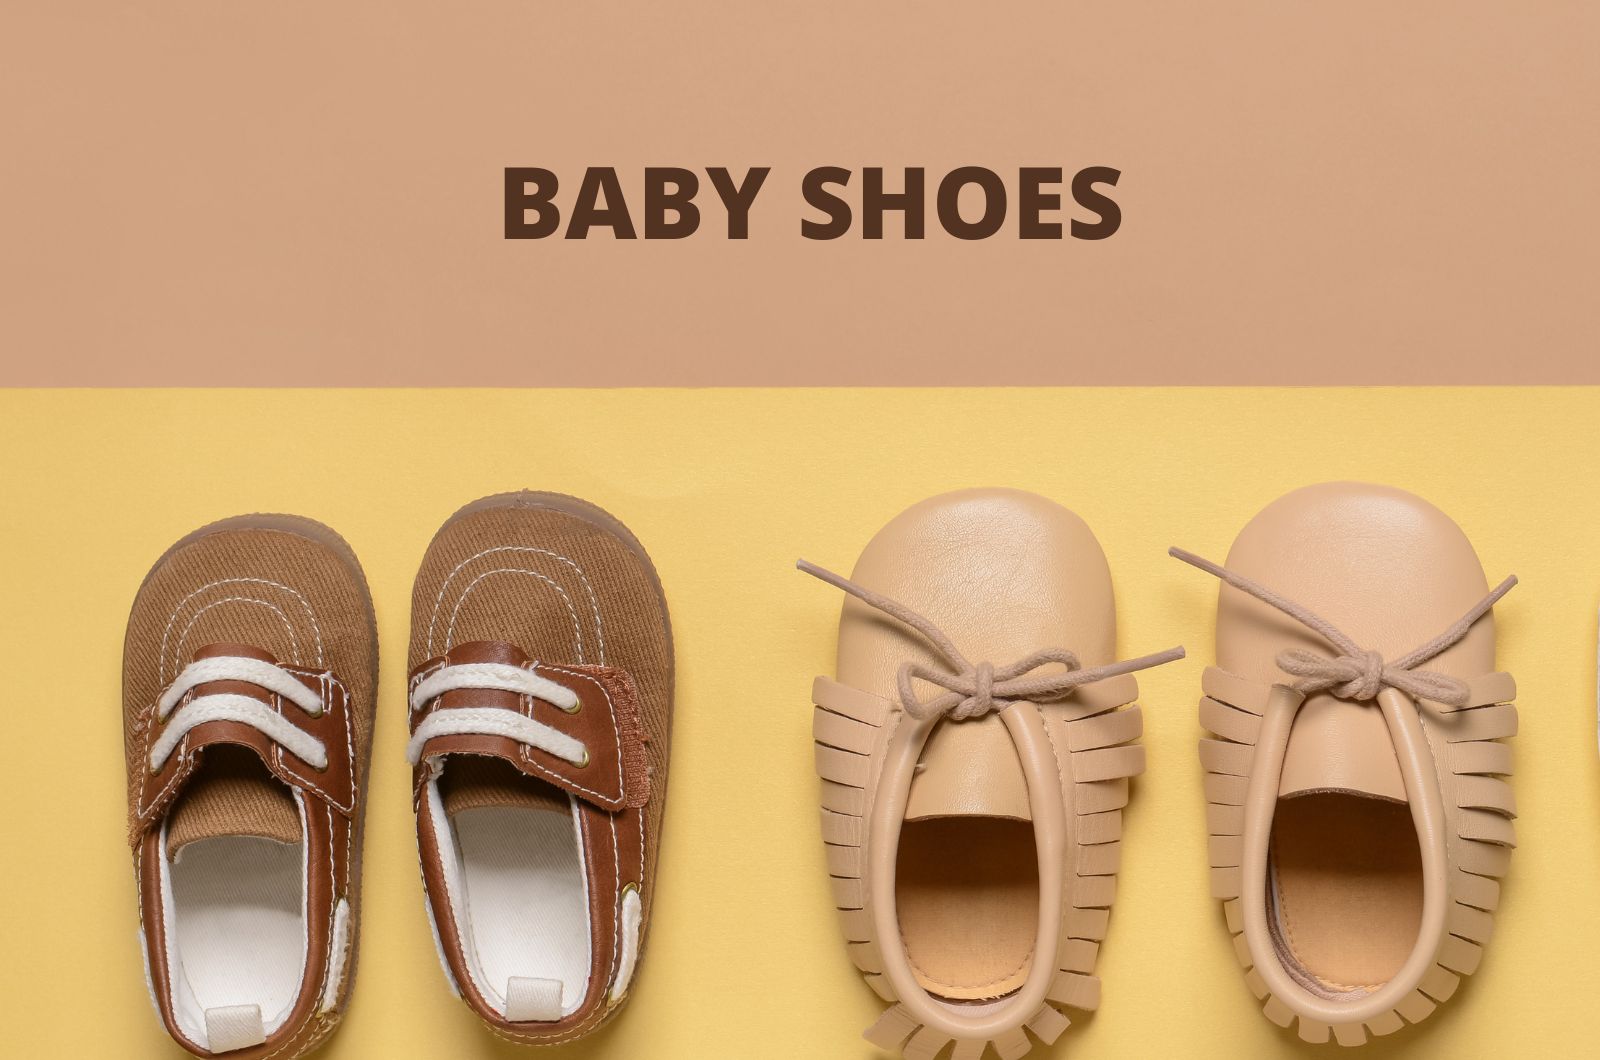 כיצד למצוא את זוג נעלי בובה לתינוק המושלמות?